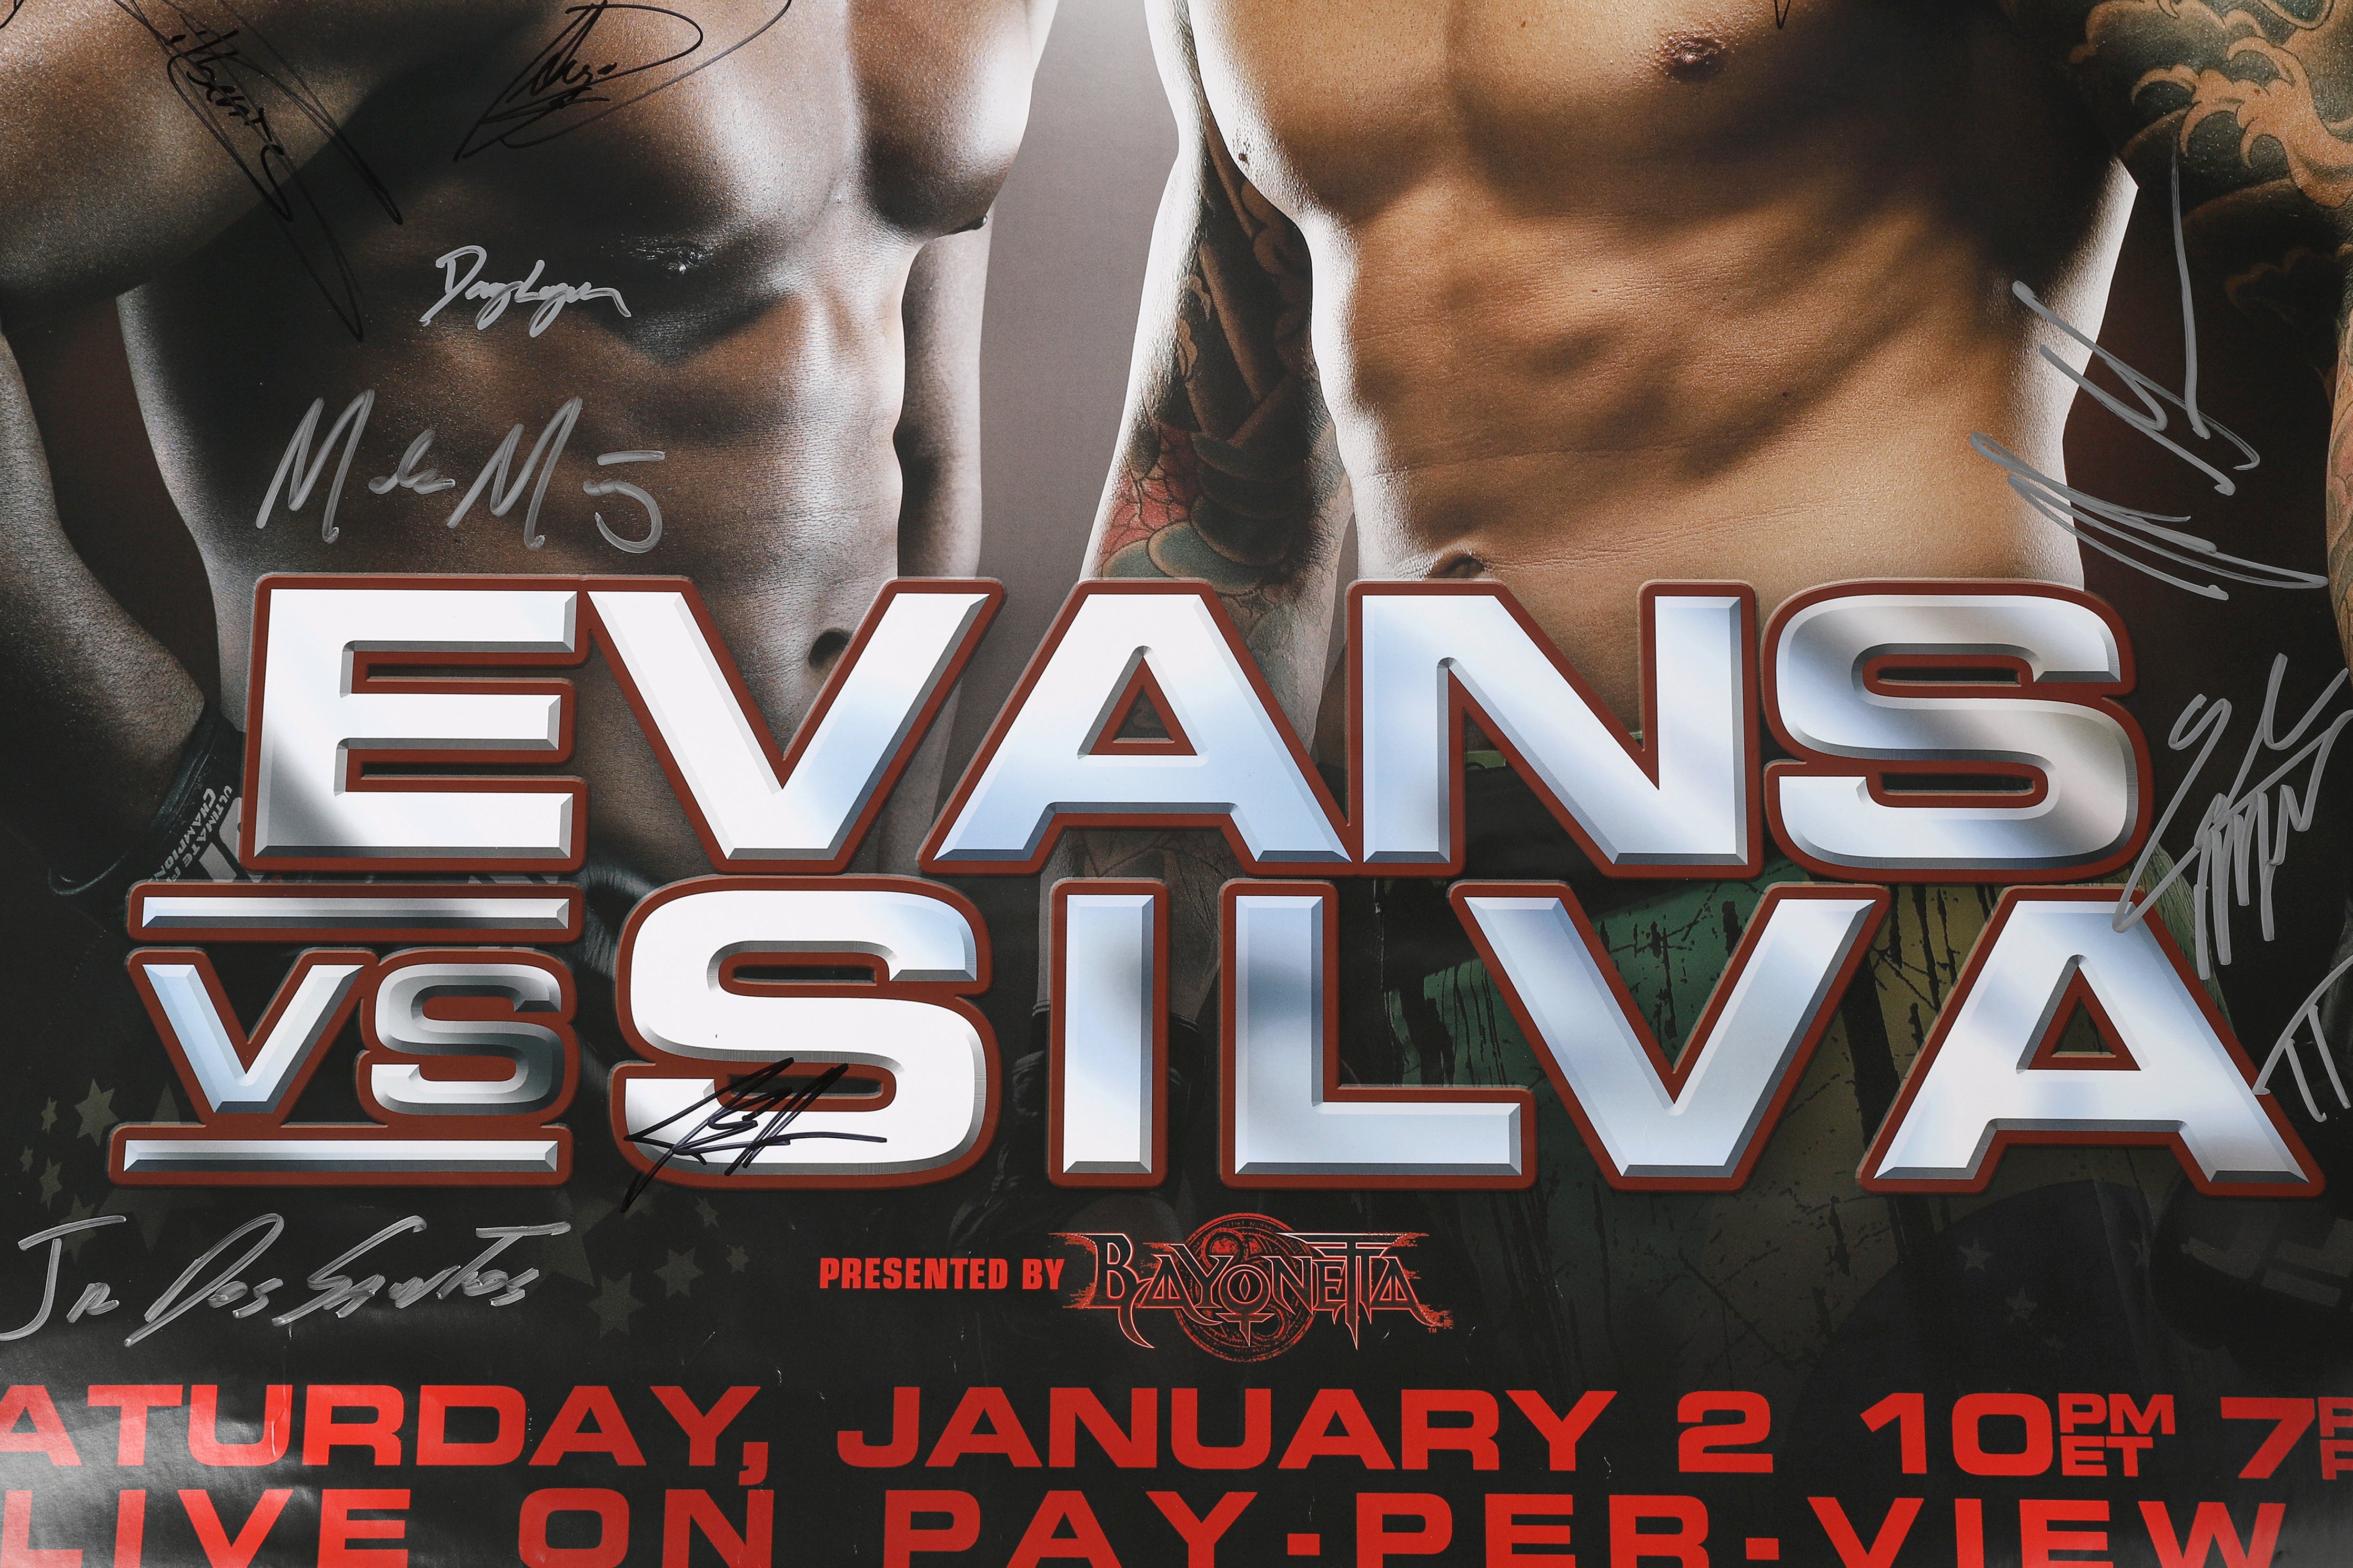 UFC 108: Evans vs Silva Autographed Event Poster